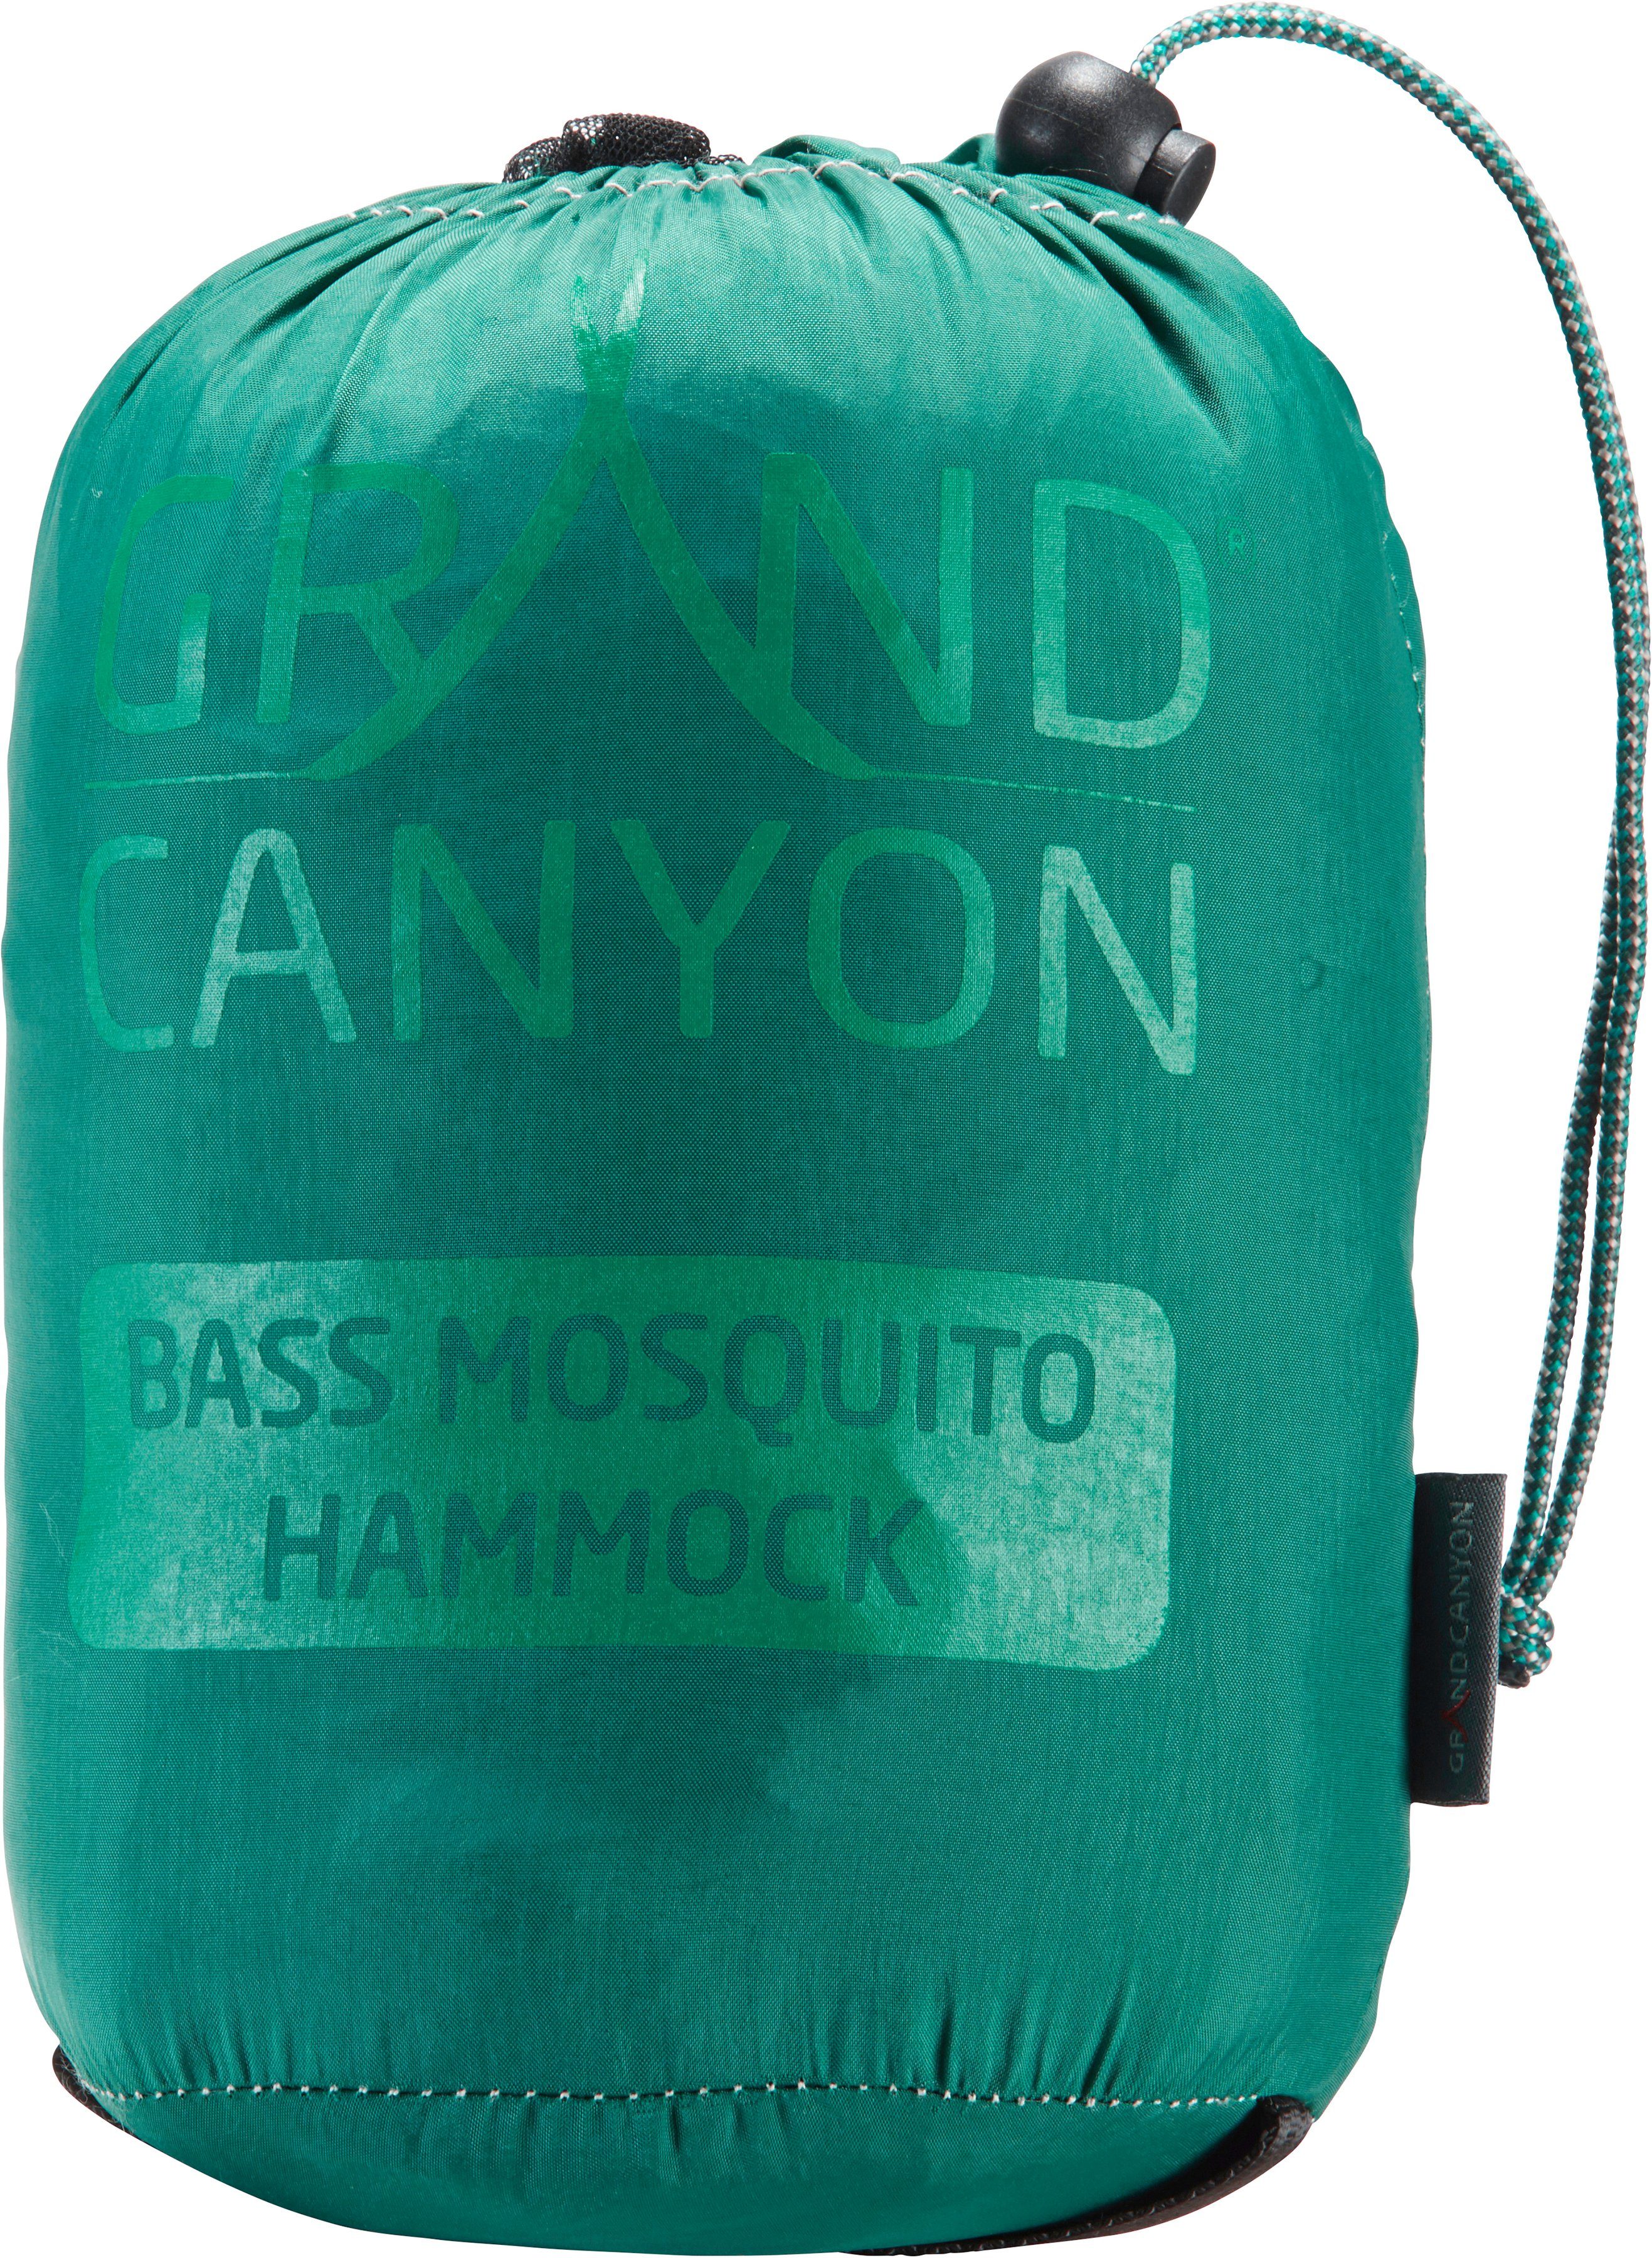 Hammock Storm Bass Mosquito Hängematte grün GRAND CANYON